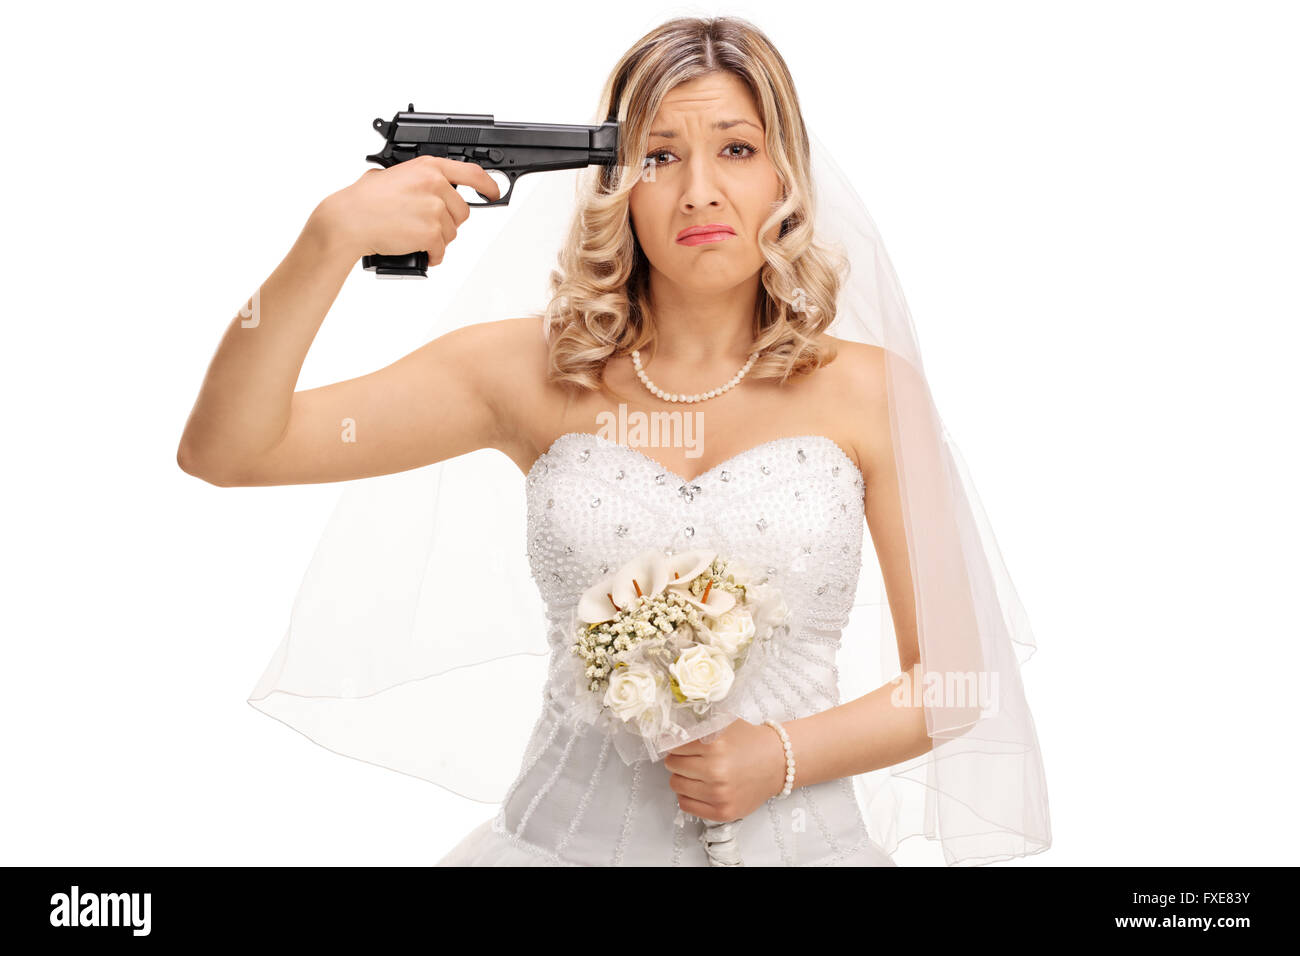 Jeune mariée désespérée tenant un pistolet contre sa tête et regardant la caméra isolé sur fond blanc Banque D'Images